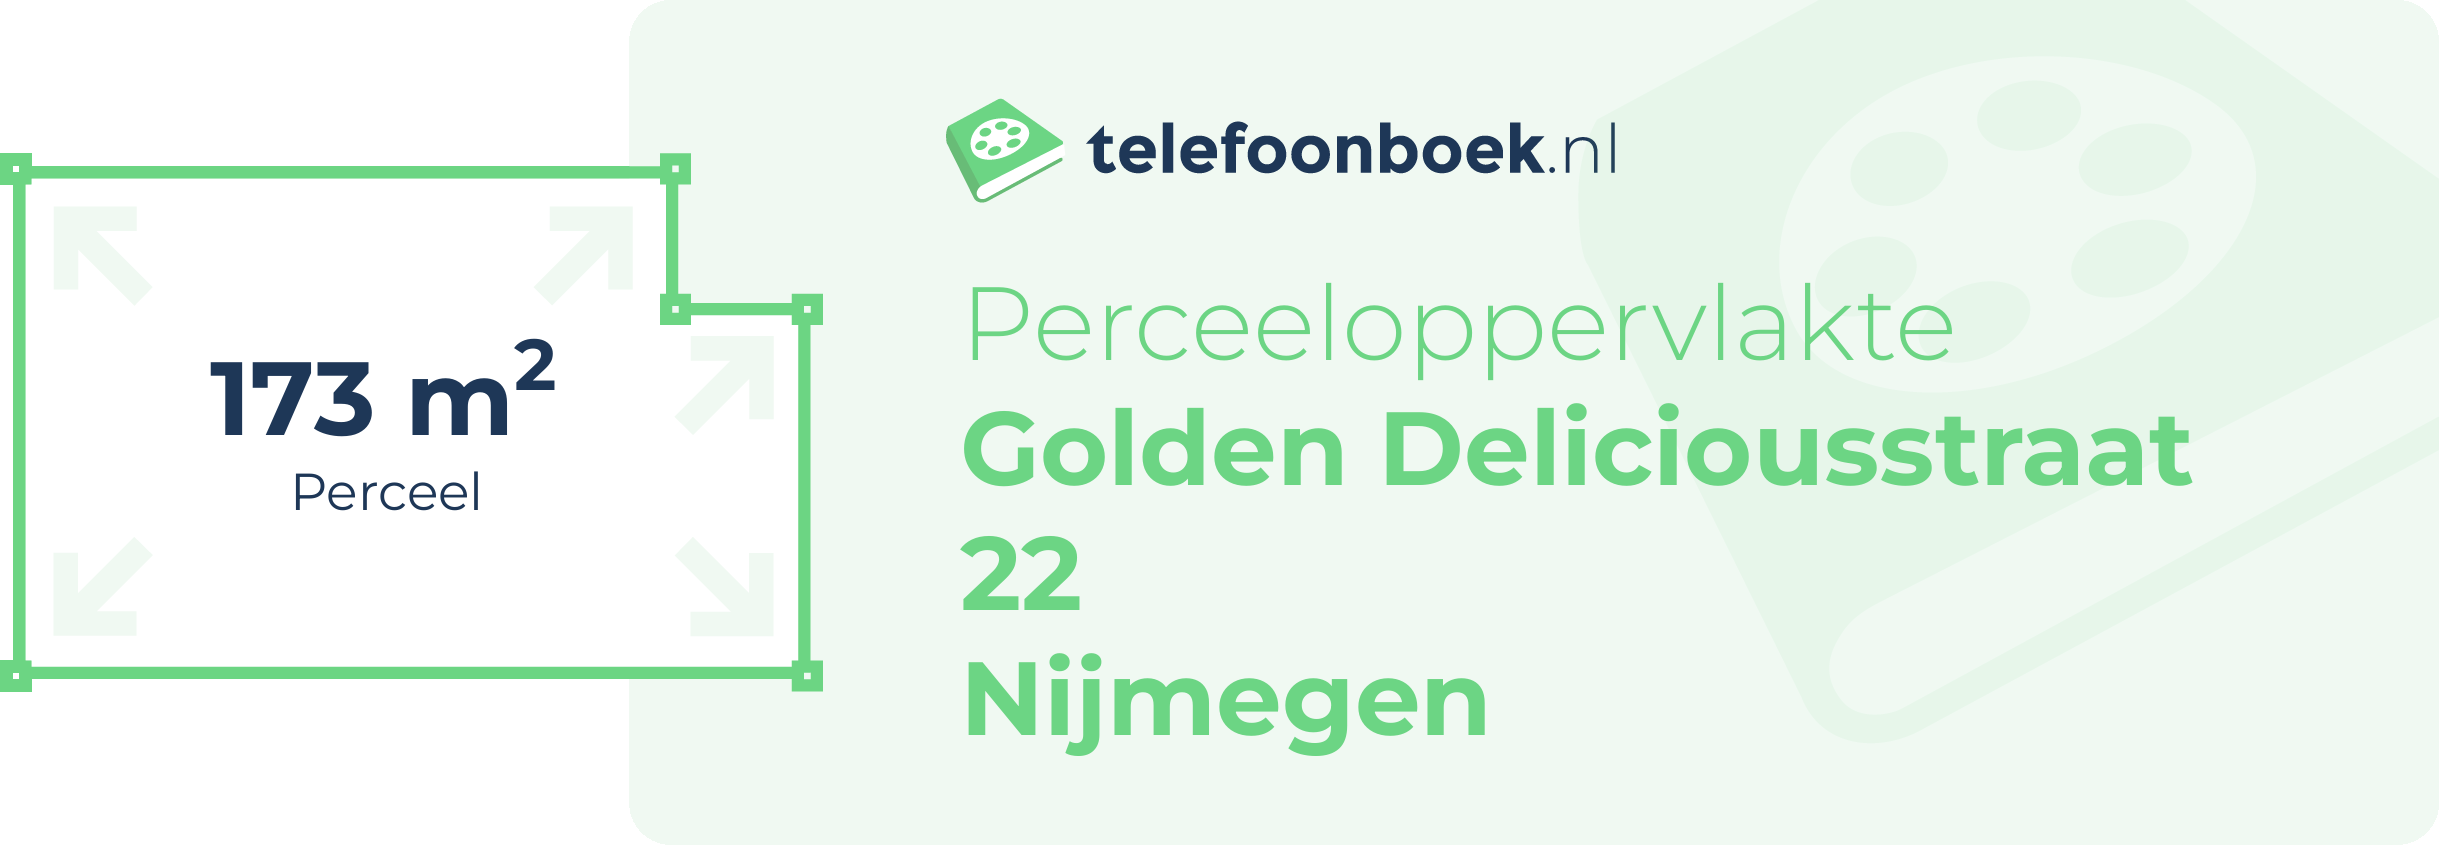 Perceeloppervlakte Golden Deliciousstraat 22 Nijmegen